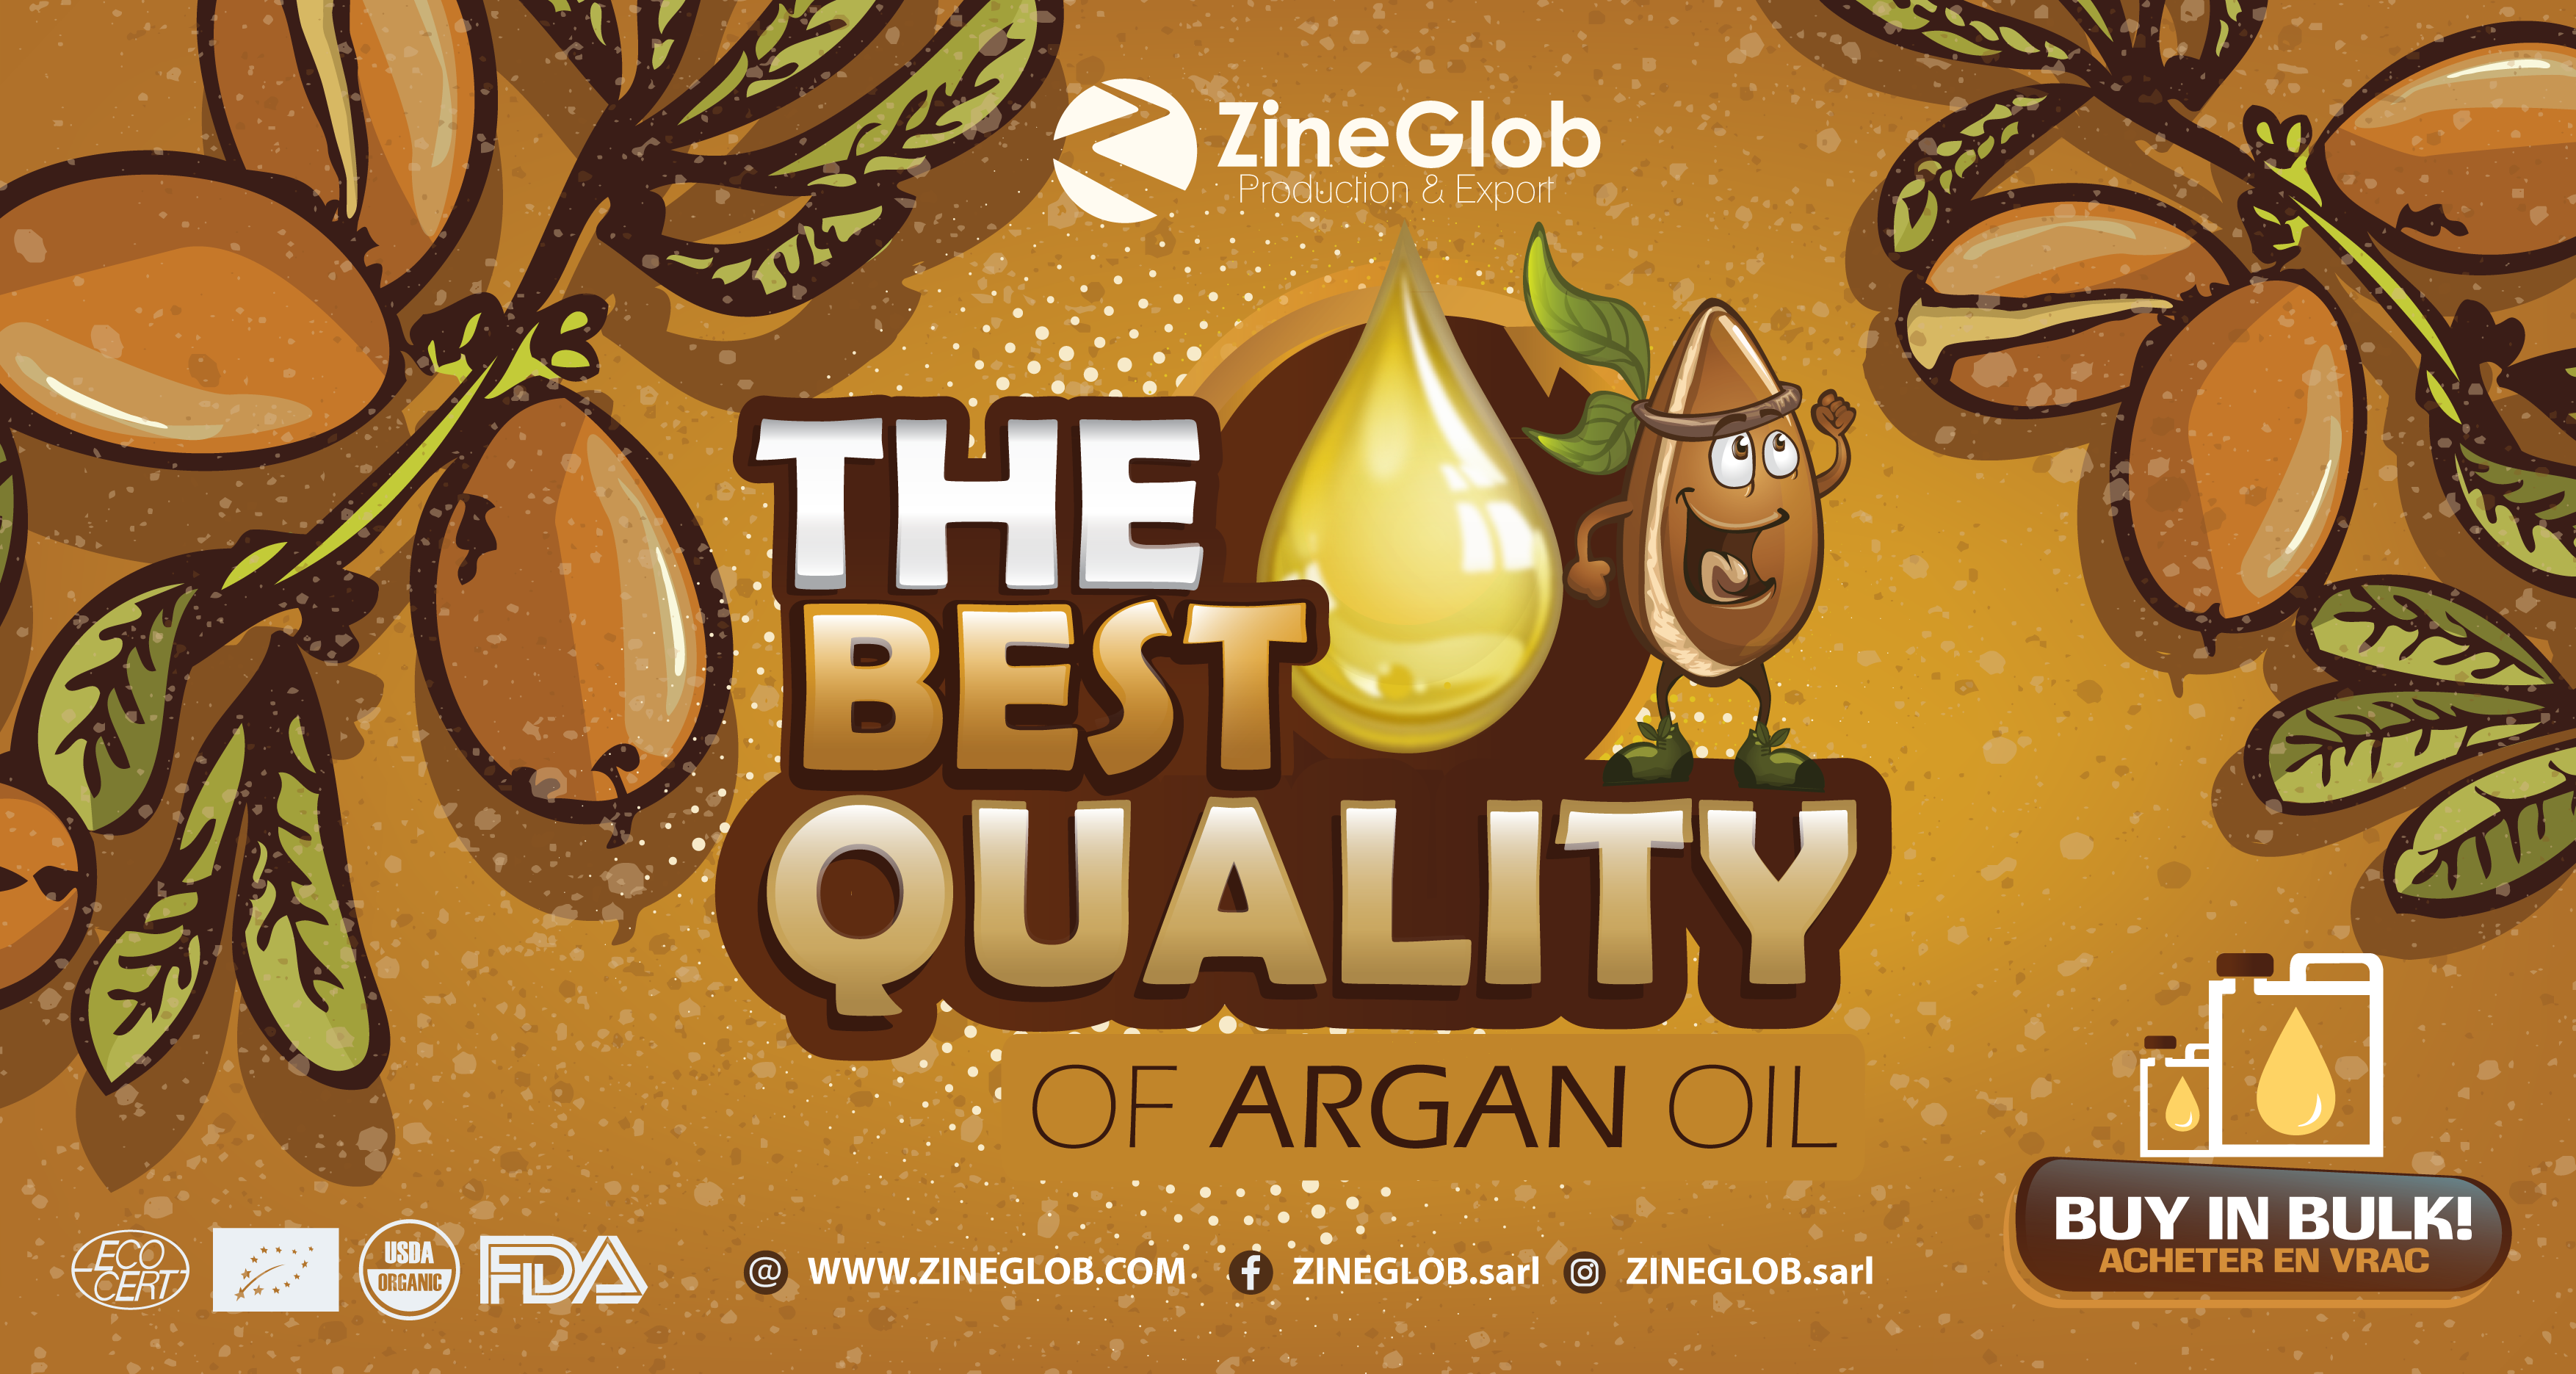 Benefits of Argan oil